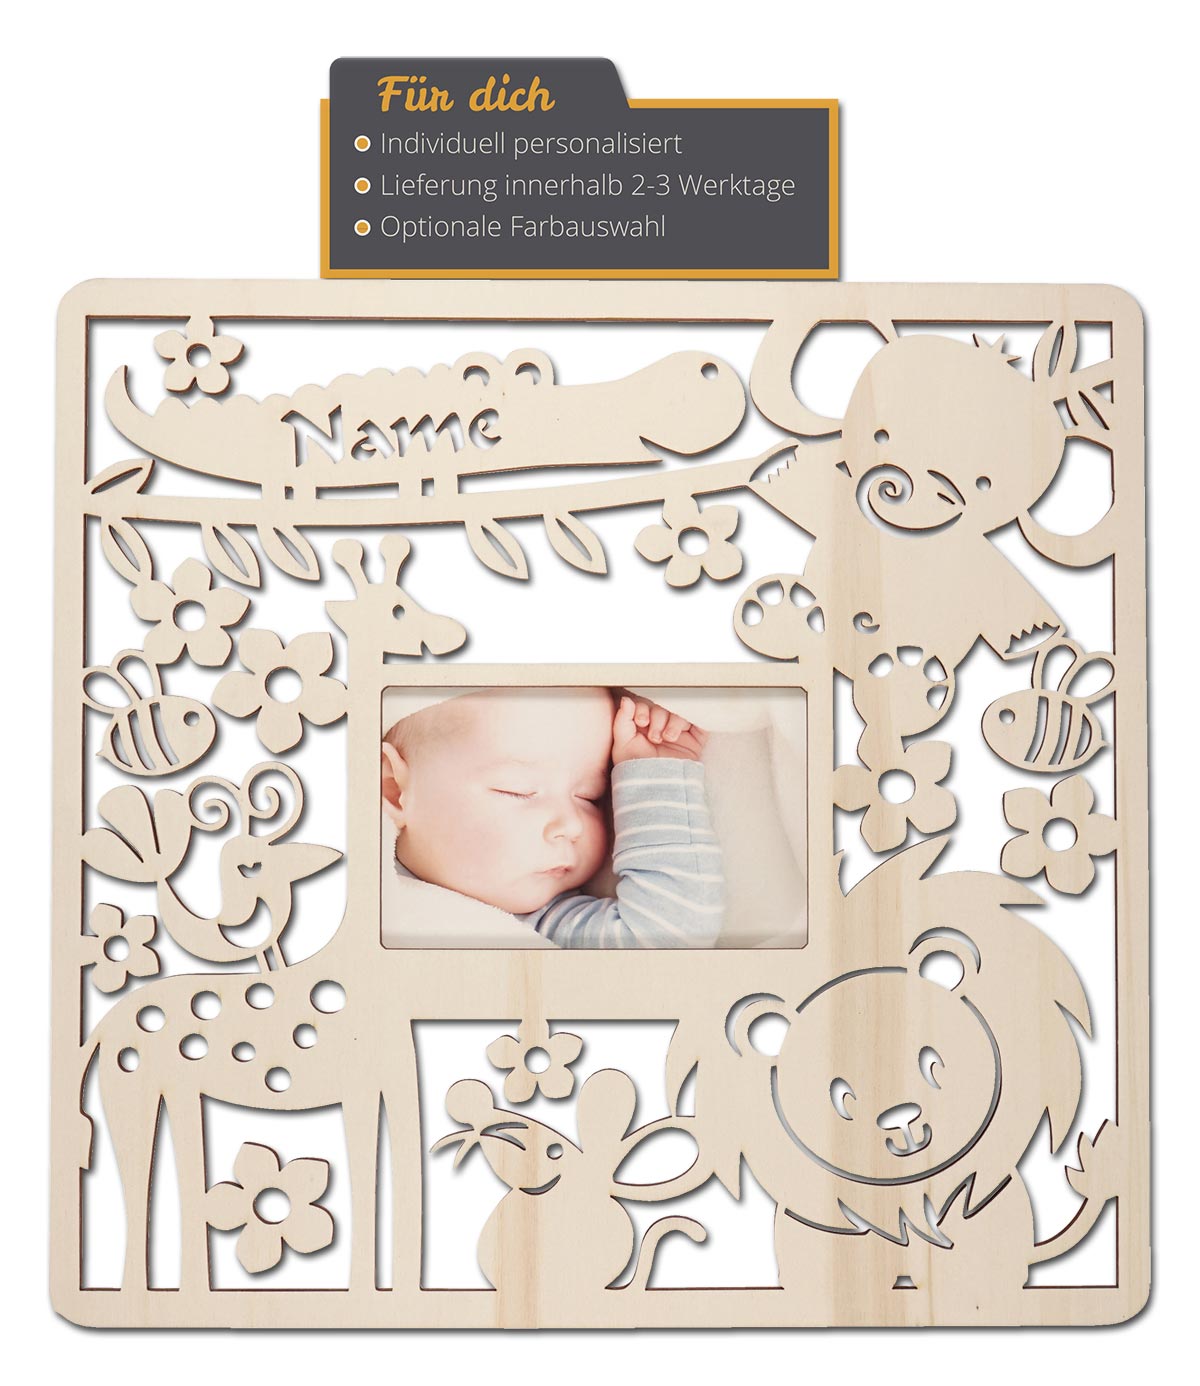 personalisiert mit Geburtsdaten als Geschenk zur Geburt GB008 Namensgeschenk für Babys Babygeschenk für Jungen Holzbild 15 x 15 x 3 cm zum Hinstellen